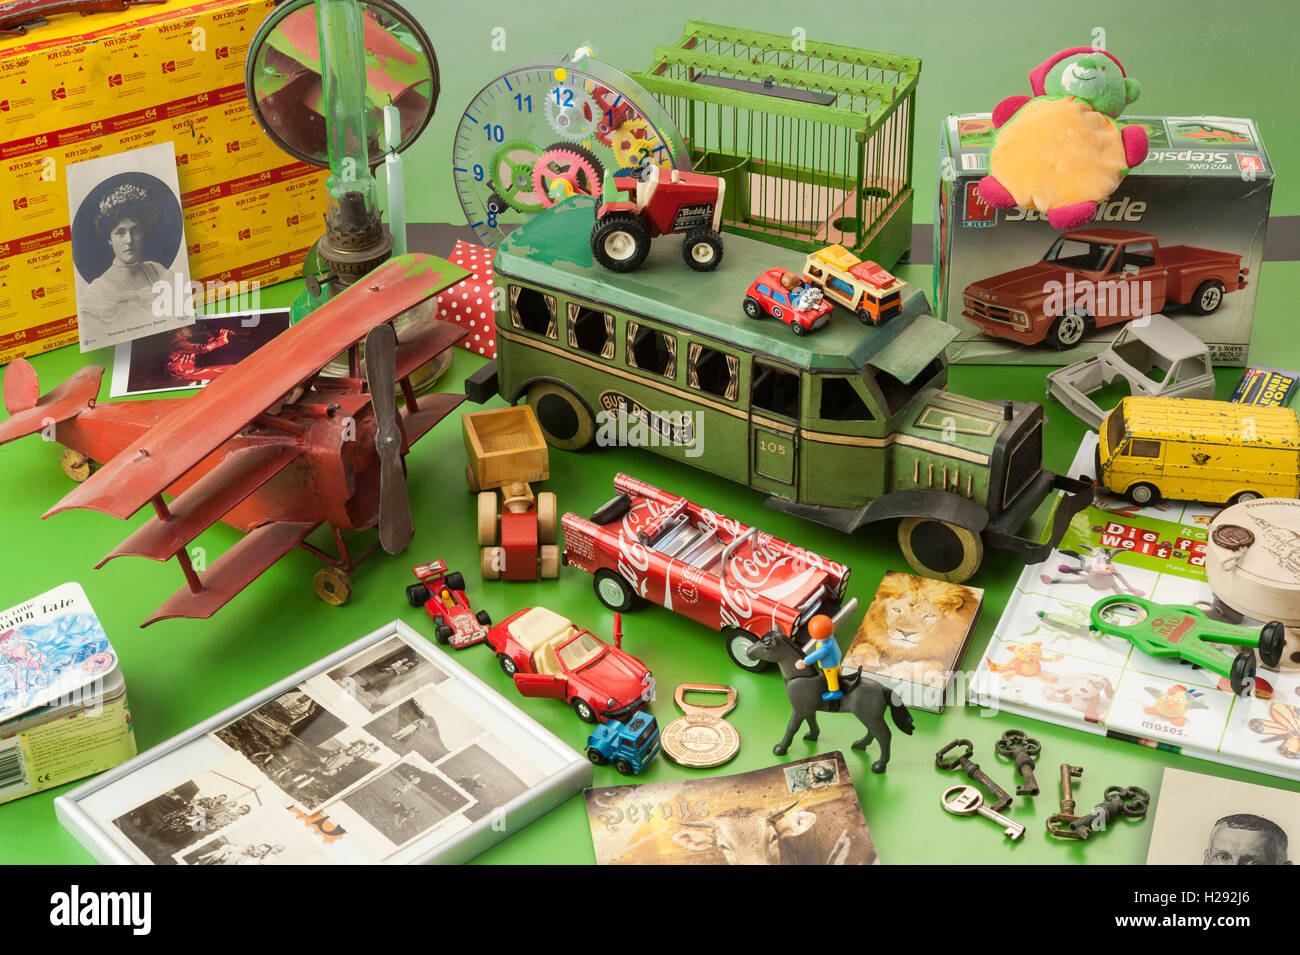 Detailfoto vom Flohmarkt.mit nostalgischen Blechspielzeug Stock Photo